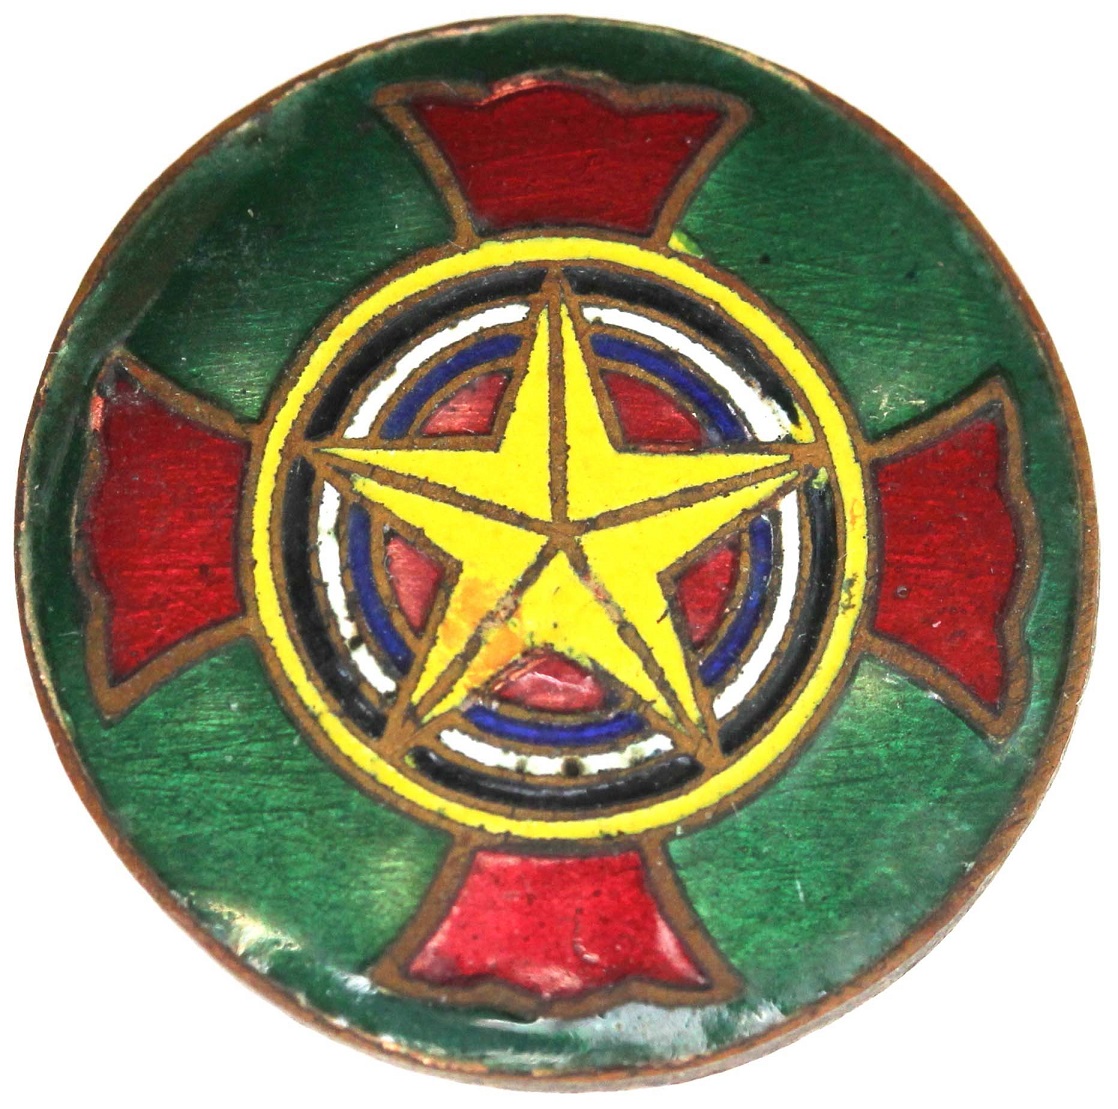 滿洲傷痍軍人會章 Manchukuo Disabled Veterans Association Badge.jpg